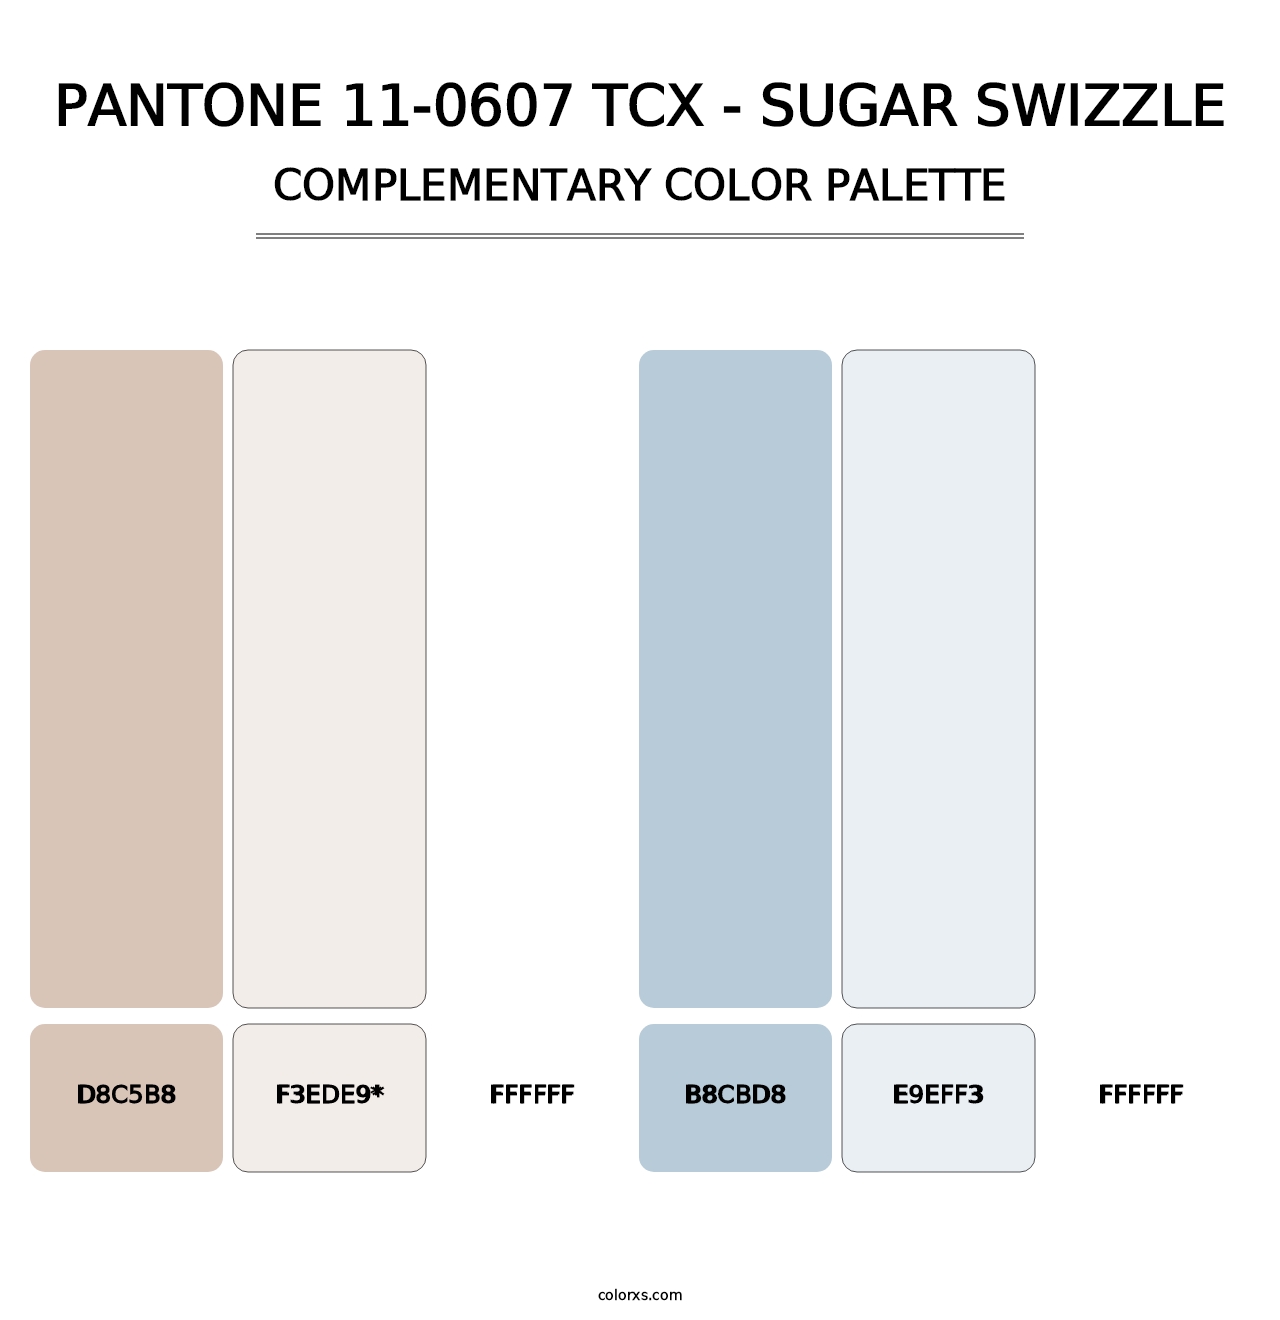 PANTONE 11-0607 TCX - Sugar Swizzle - Complementary Color Palette